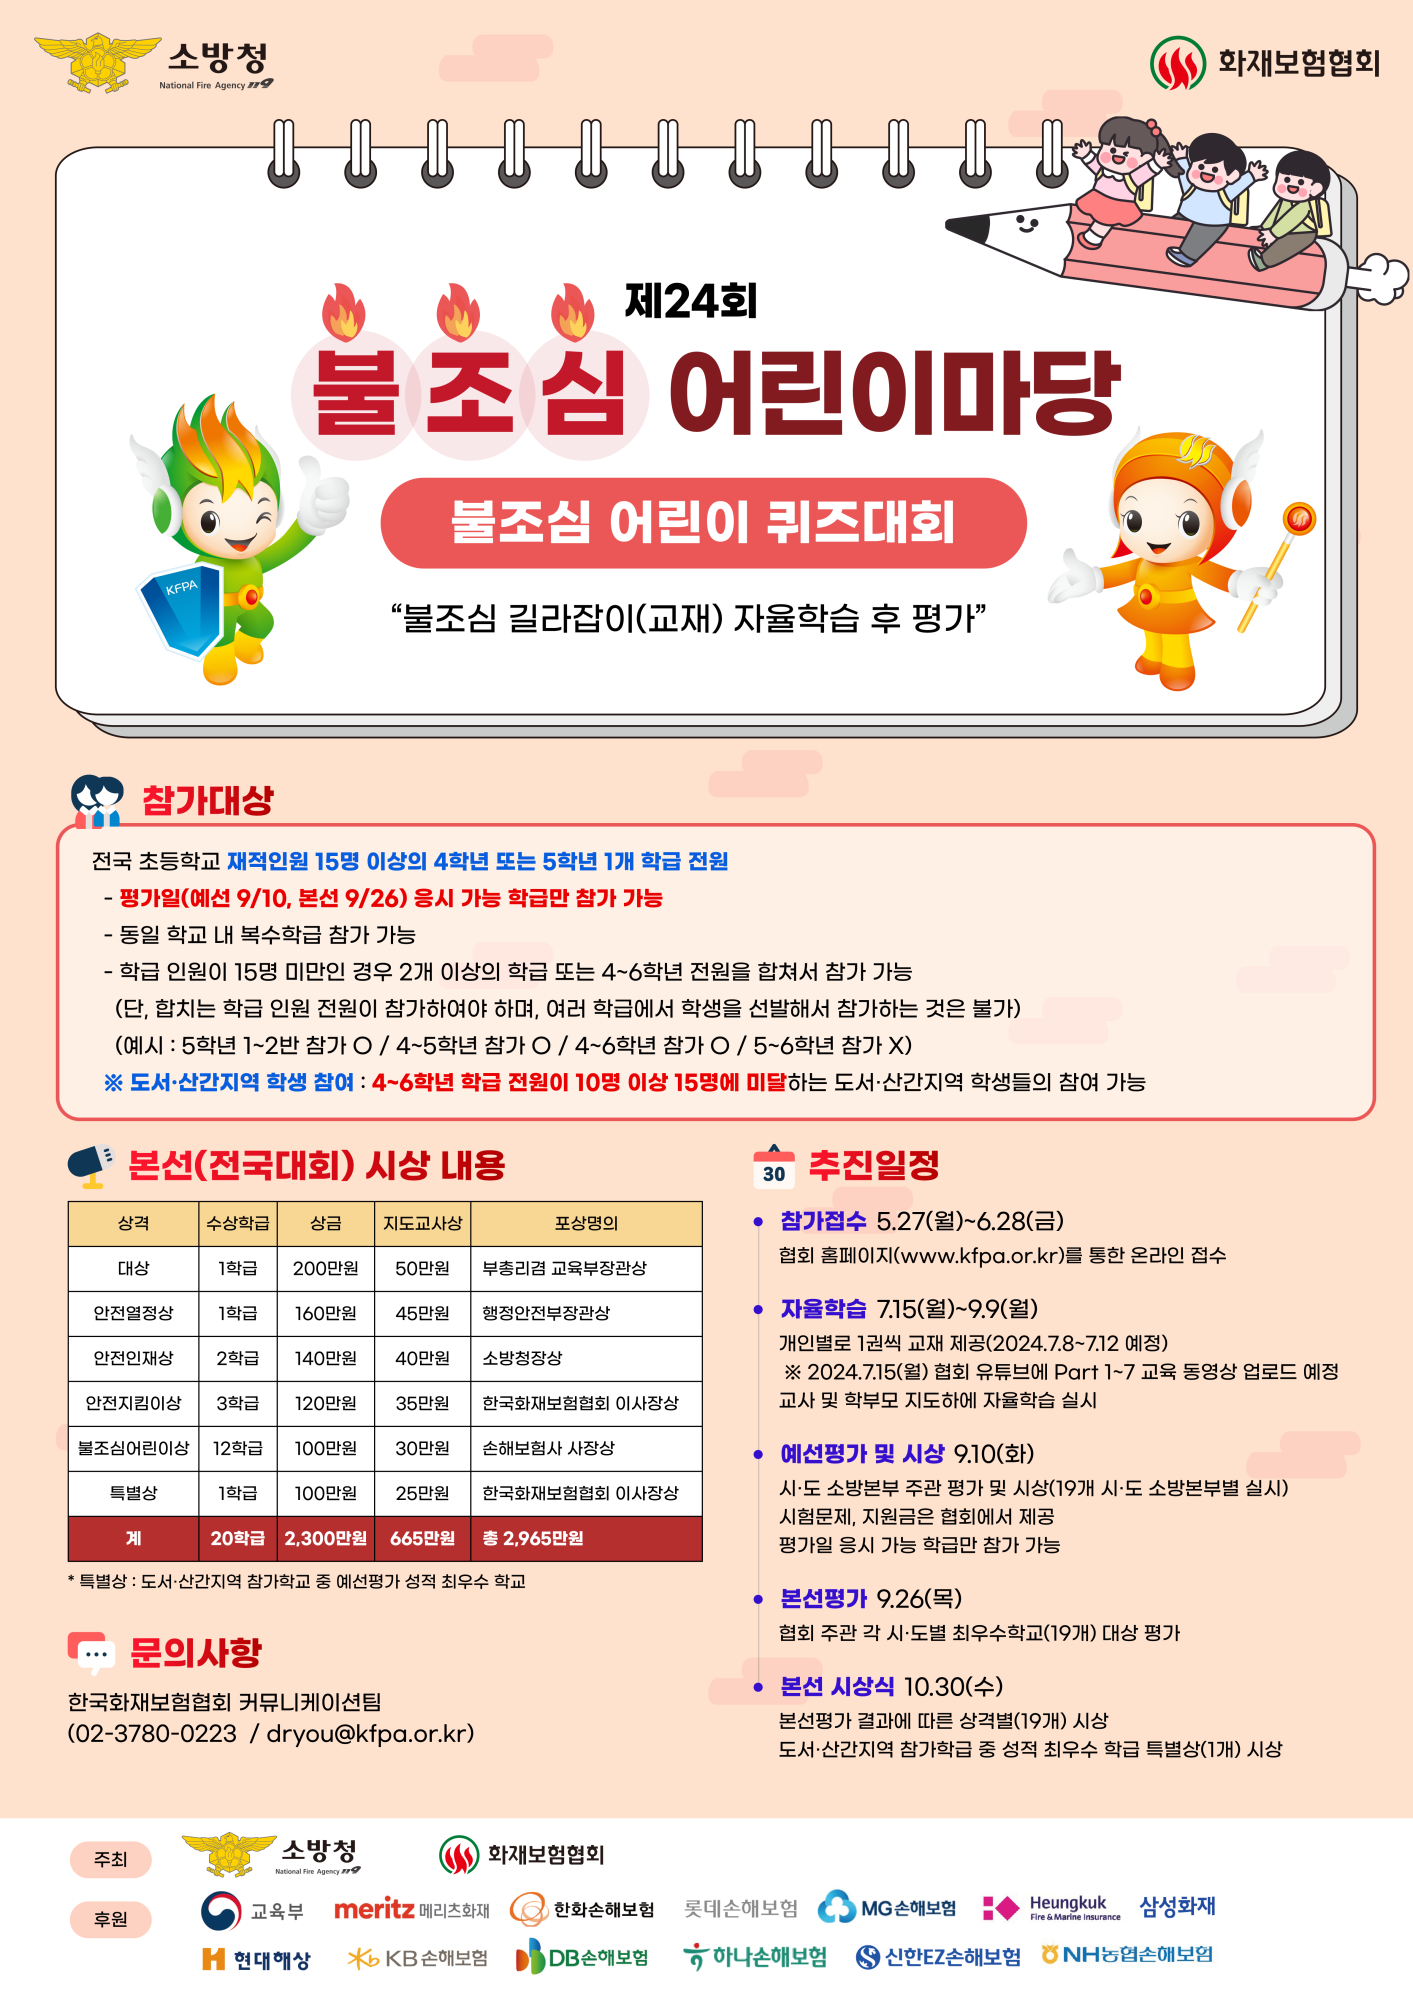 충청북도옥천소방서 예방안전과_홍보 포스터(1)